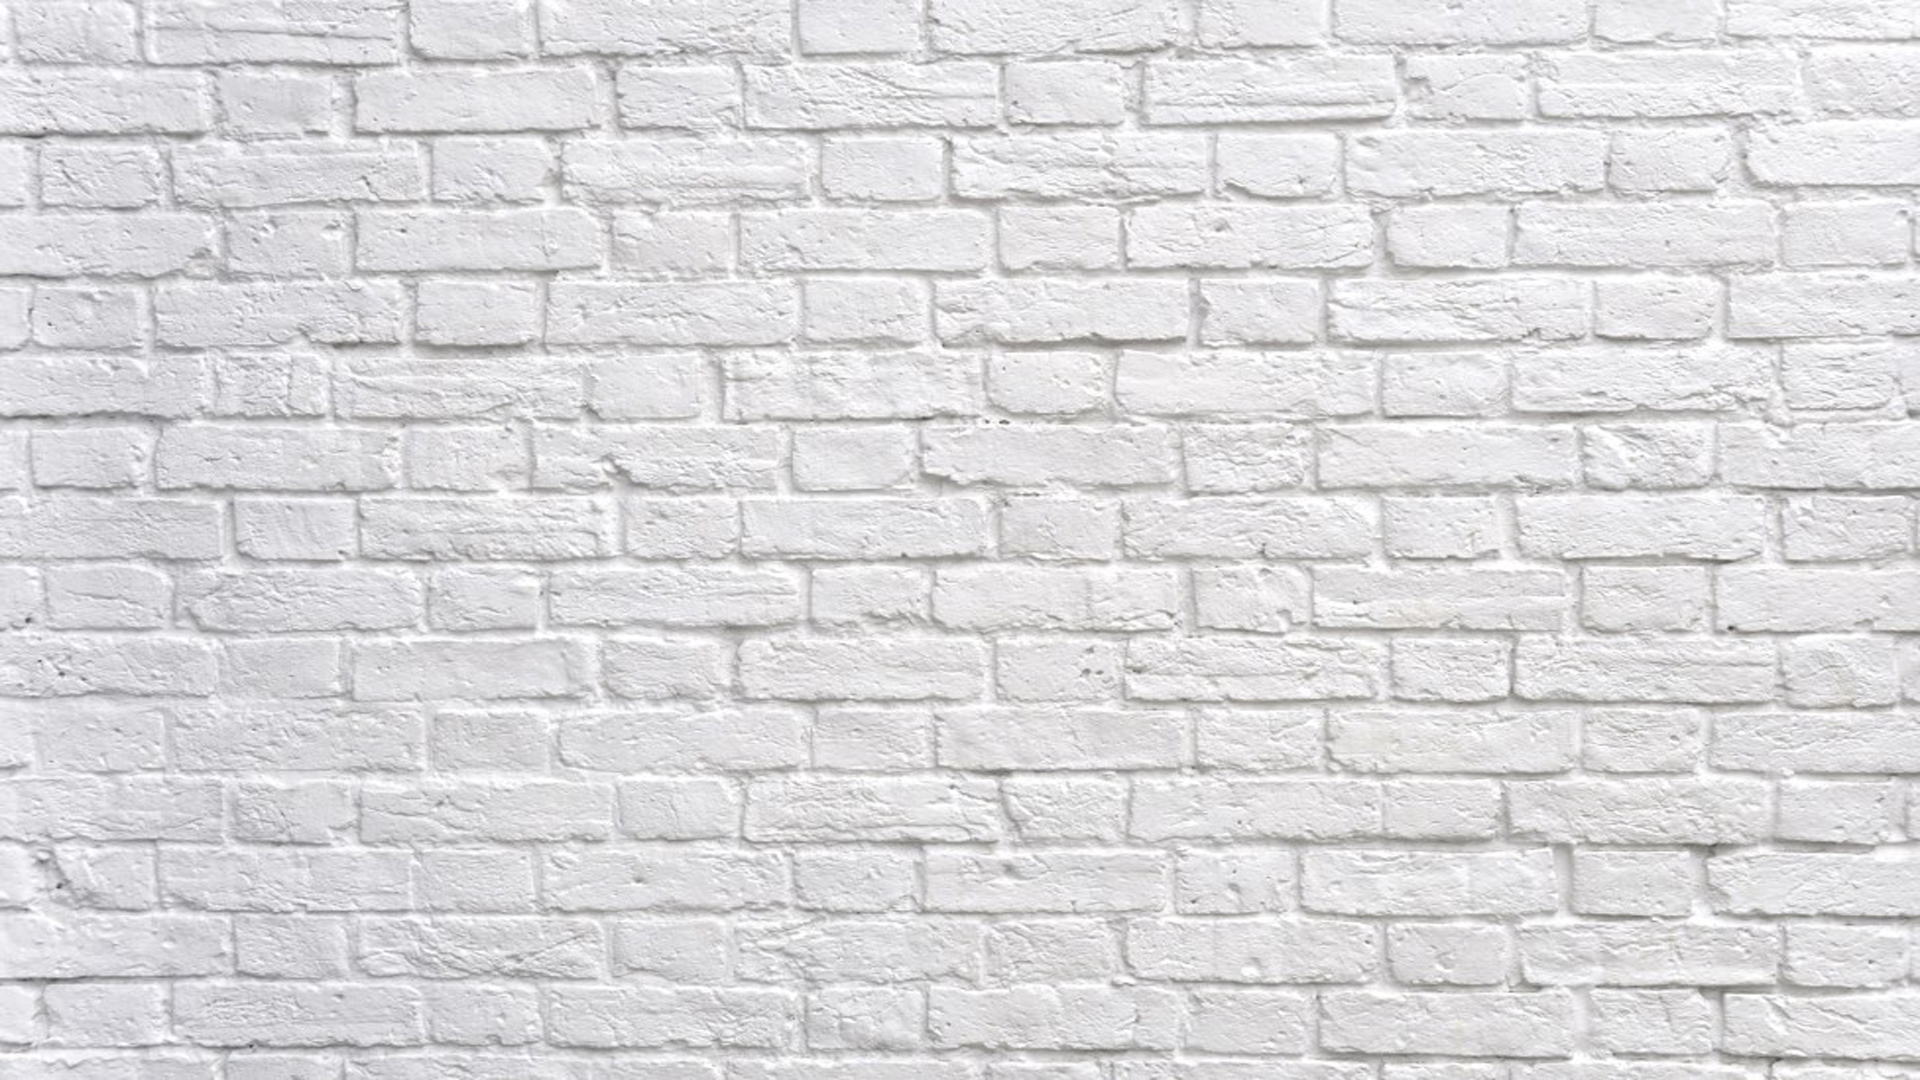 Hình nền tường gạch đen trắng: Một bức ảnh đen trắng với tông màu trầm lắng mang đến cho không gian sống của bạn sự bí ẩn, lãng mạn. Hình nền tường gạch đen trắng là lựa chọn hoàn hảo để tạo điểm nhấn đặc biệt cho phòng khách, phòng ngủ của bạn. Bạn sẽ ấn tượng với sự trang nhã, thanh lịch của chiếc ghế sofa, tủ kệ… trên nền tường gạch đen trắng.